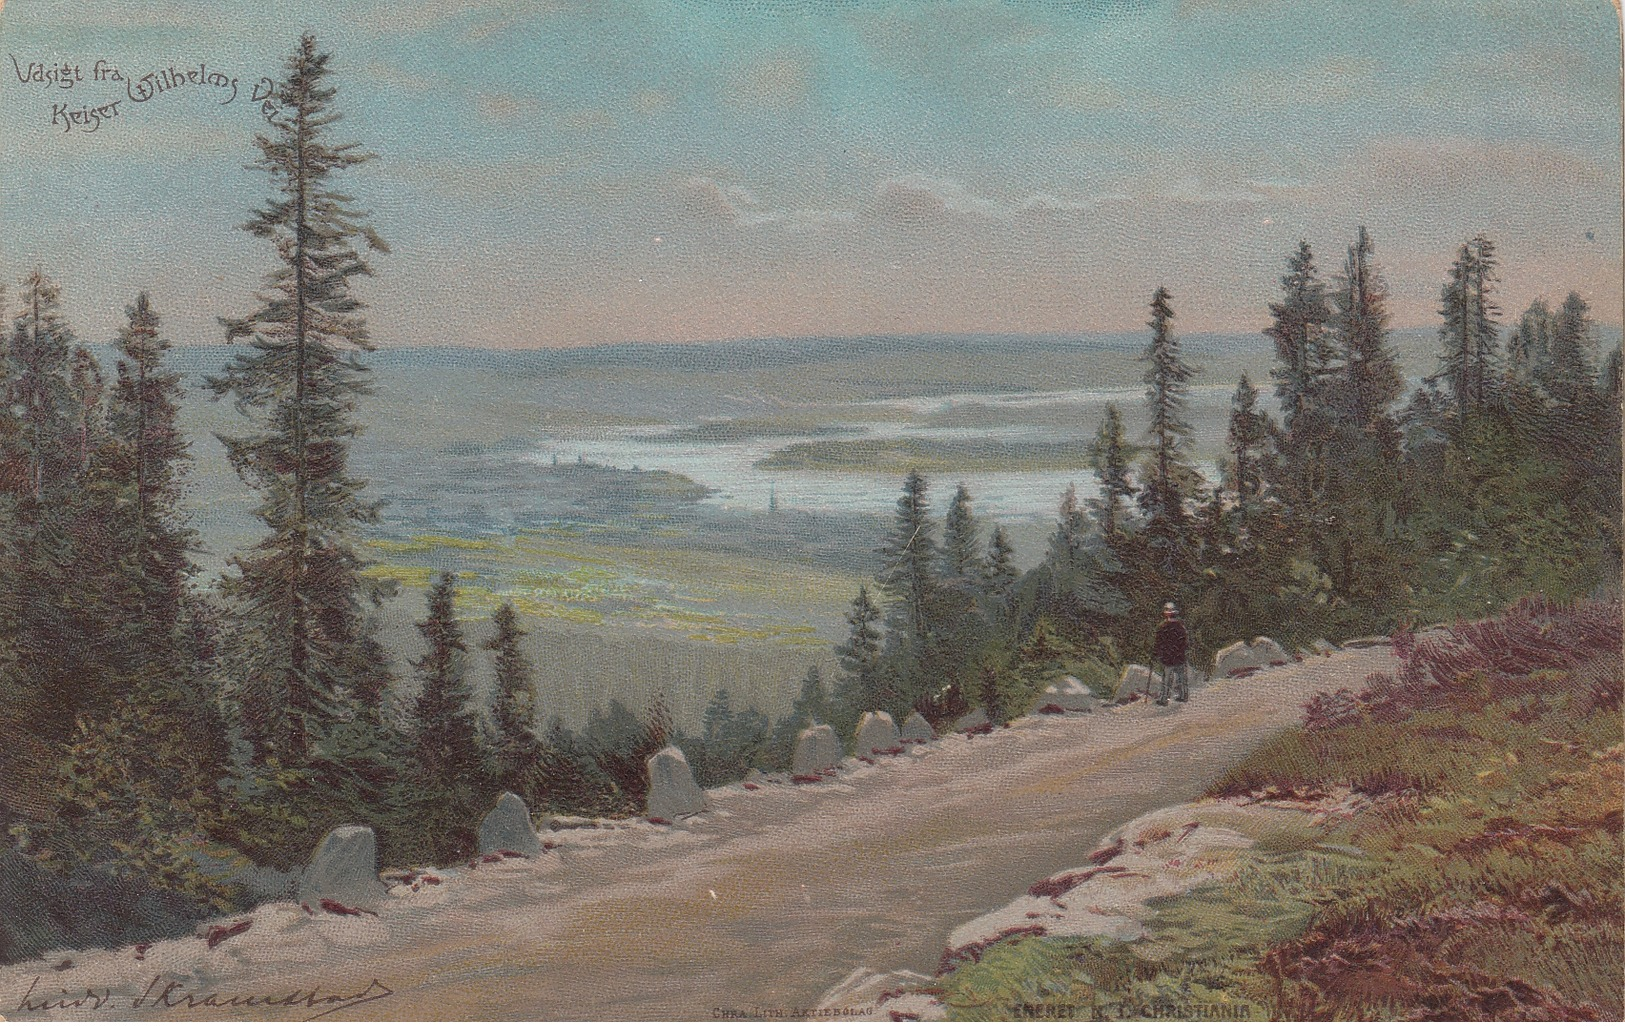 NORWAY , 1890s-1907 ; Vdsigt Fra Keiser Wilhelm Vei - Norway